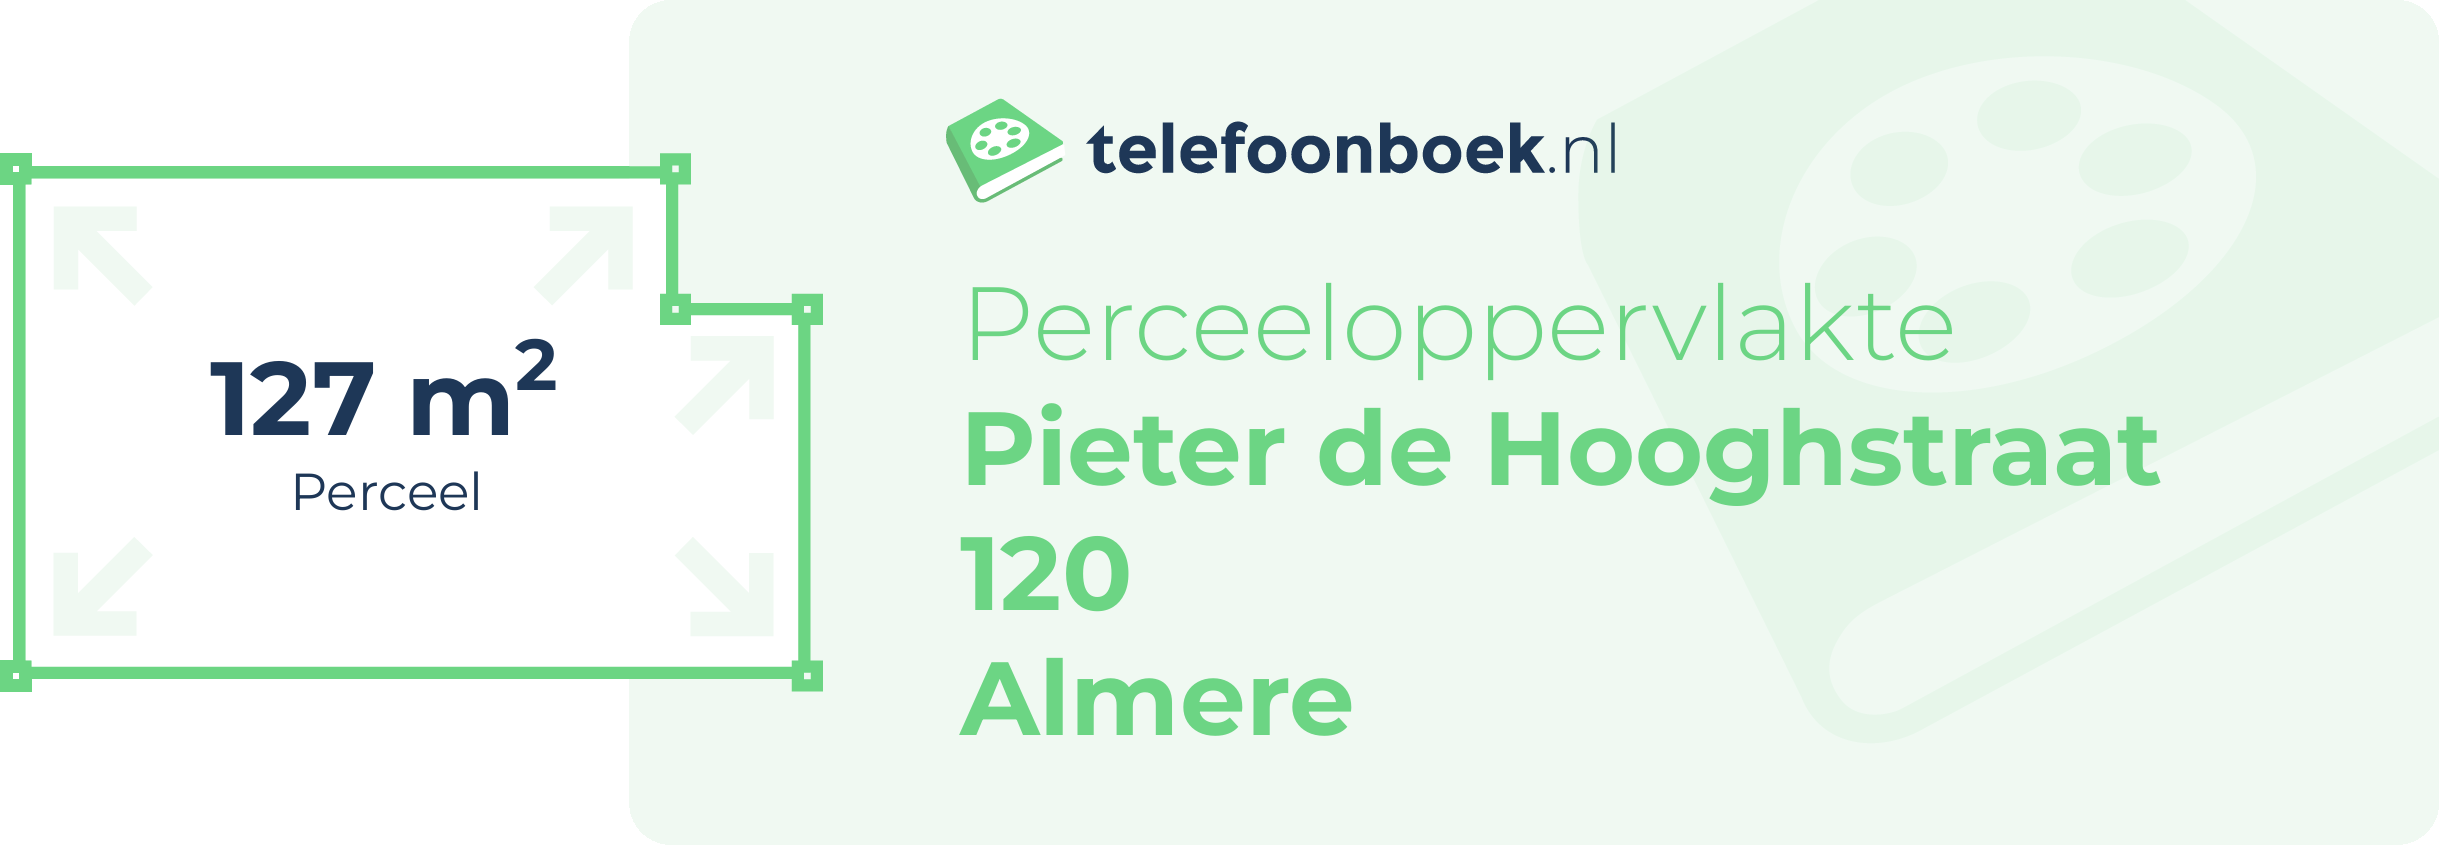 Perceeloppervlakte Pieter De Hooghstraat 120 Almere